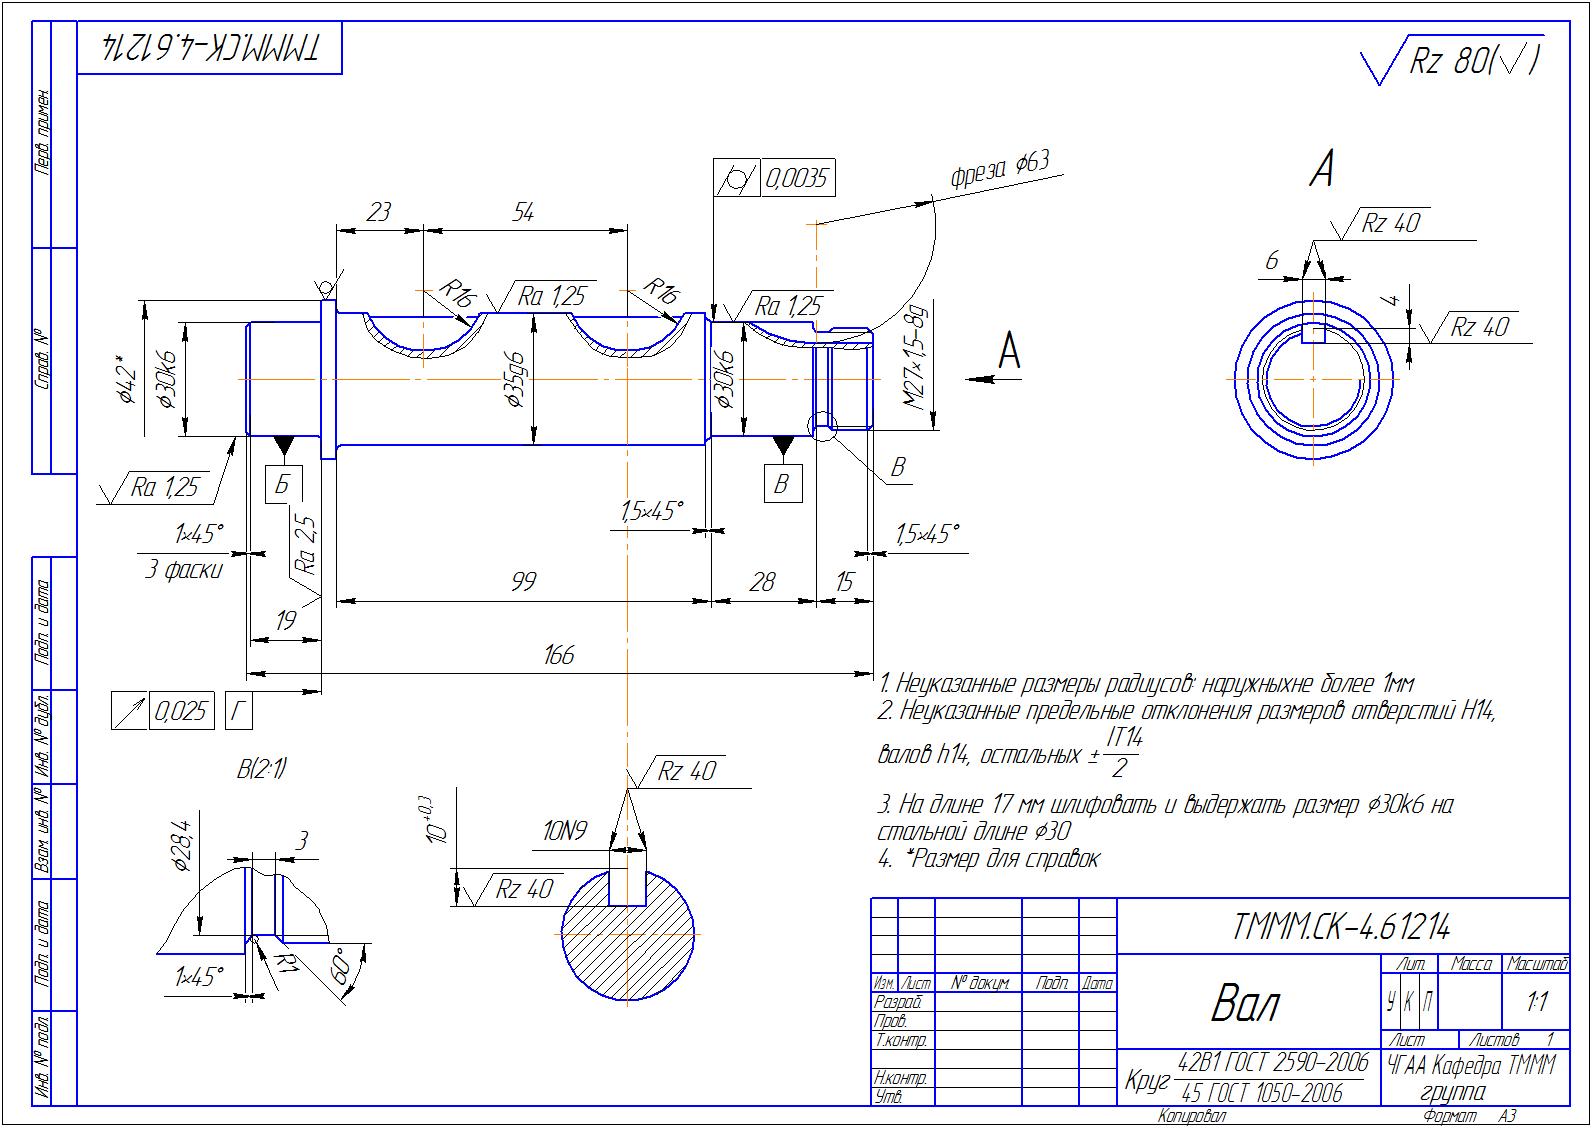 Контрольная работа: Разработка технологического процесса термической обработки стальной детали Вал коробки передач